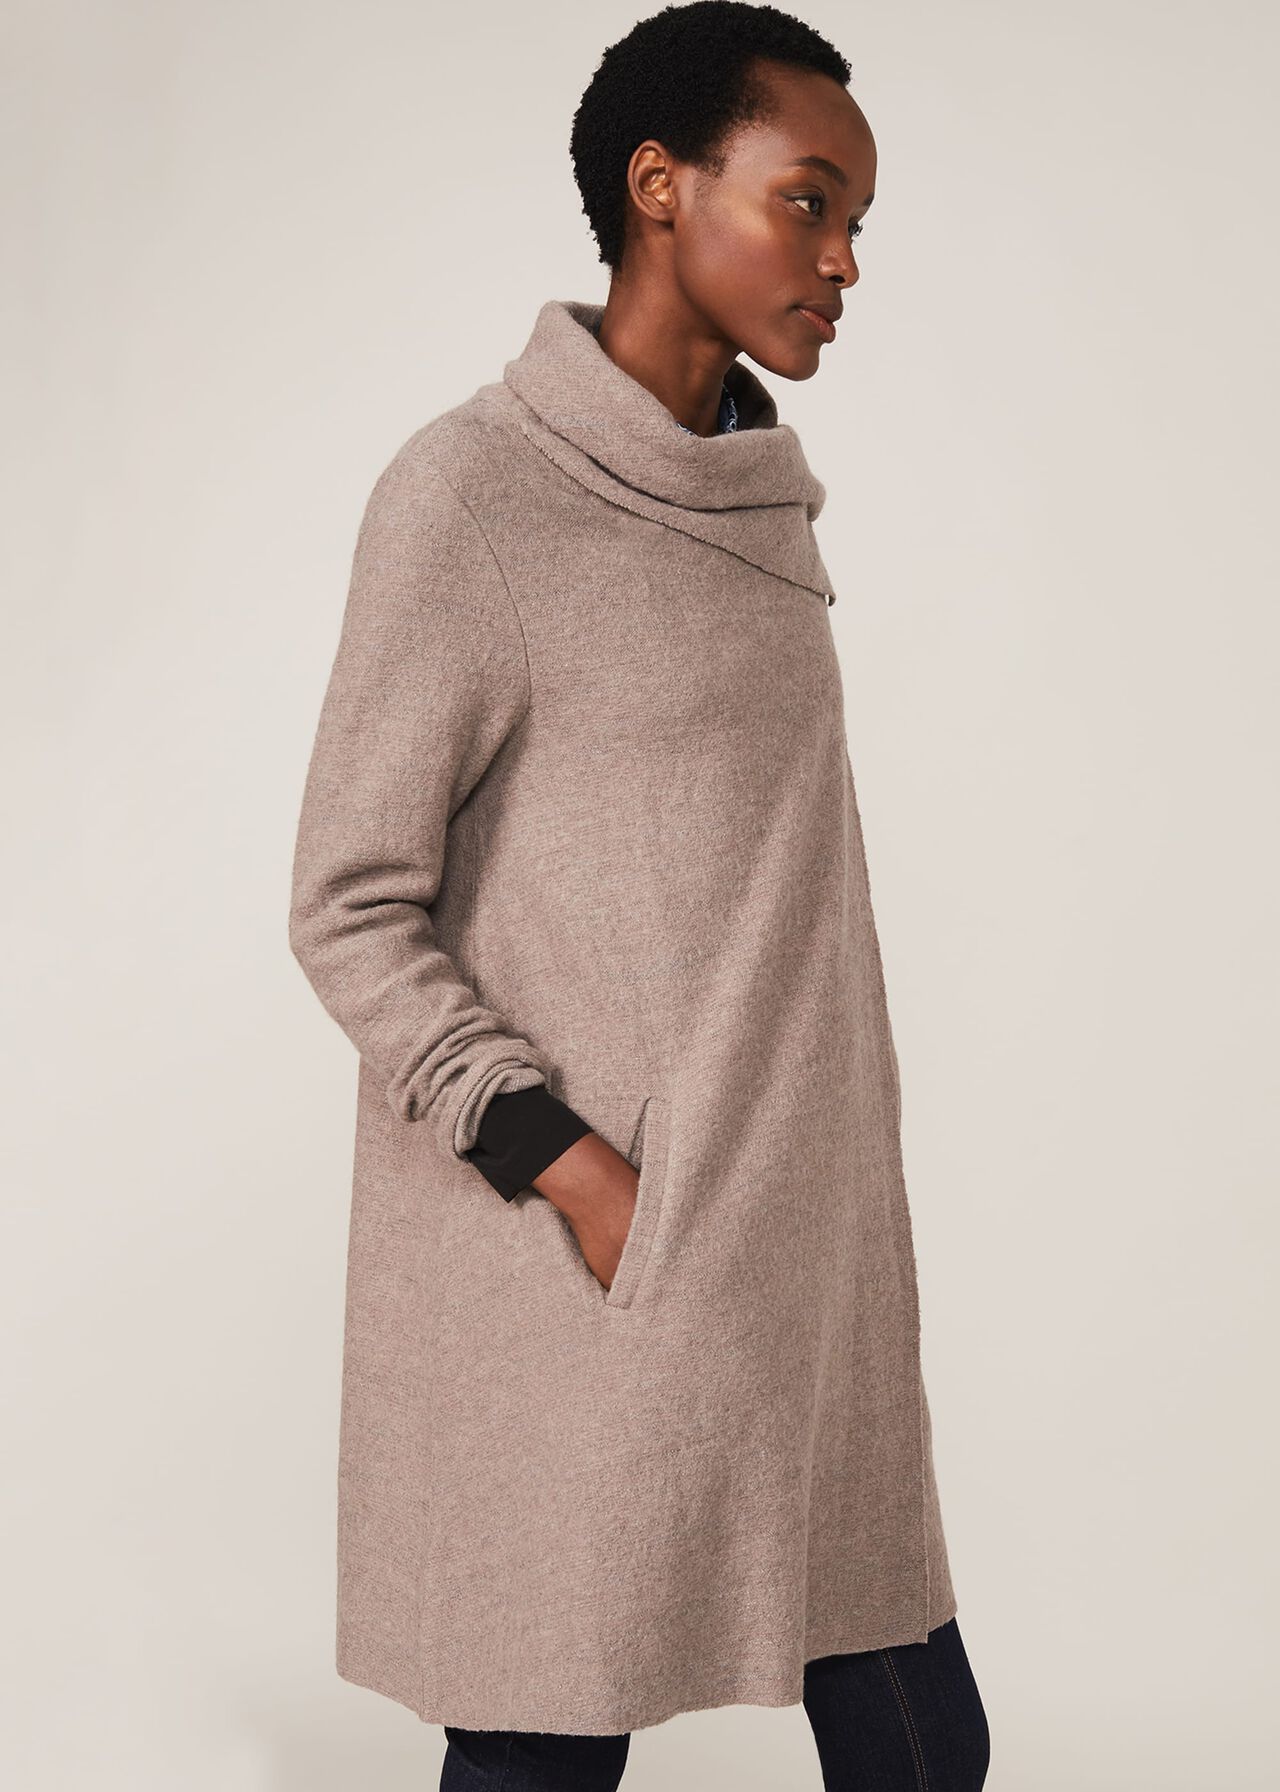 Bellona Knit Coat